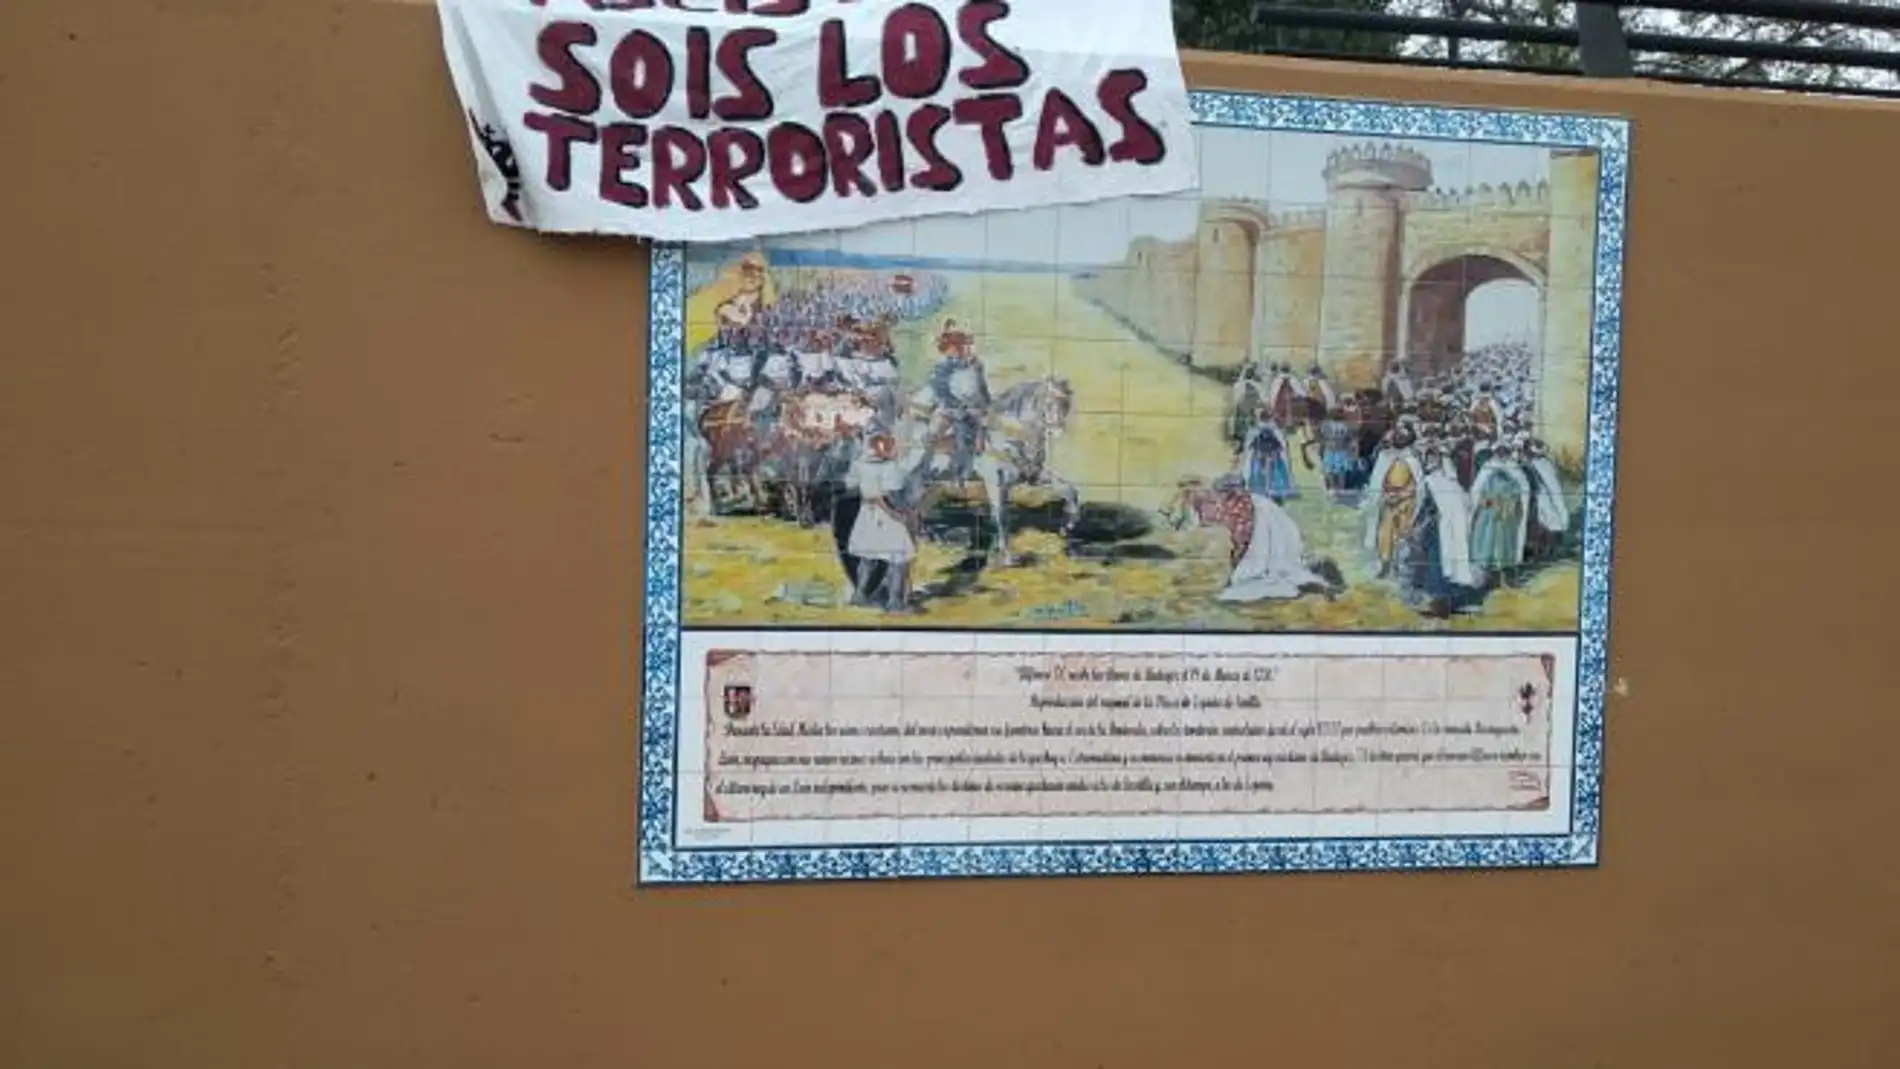 Condena en Badajoz al "acto vandálico" sufrido por el mural que ensalza la figura de Alfonso IX de León en Badajoz